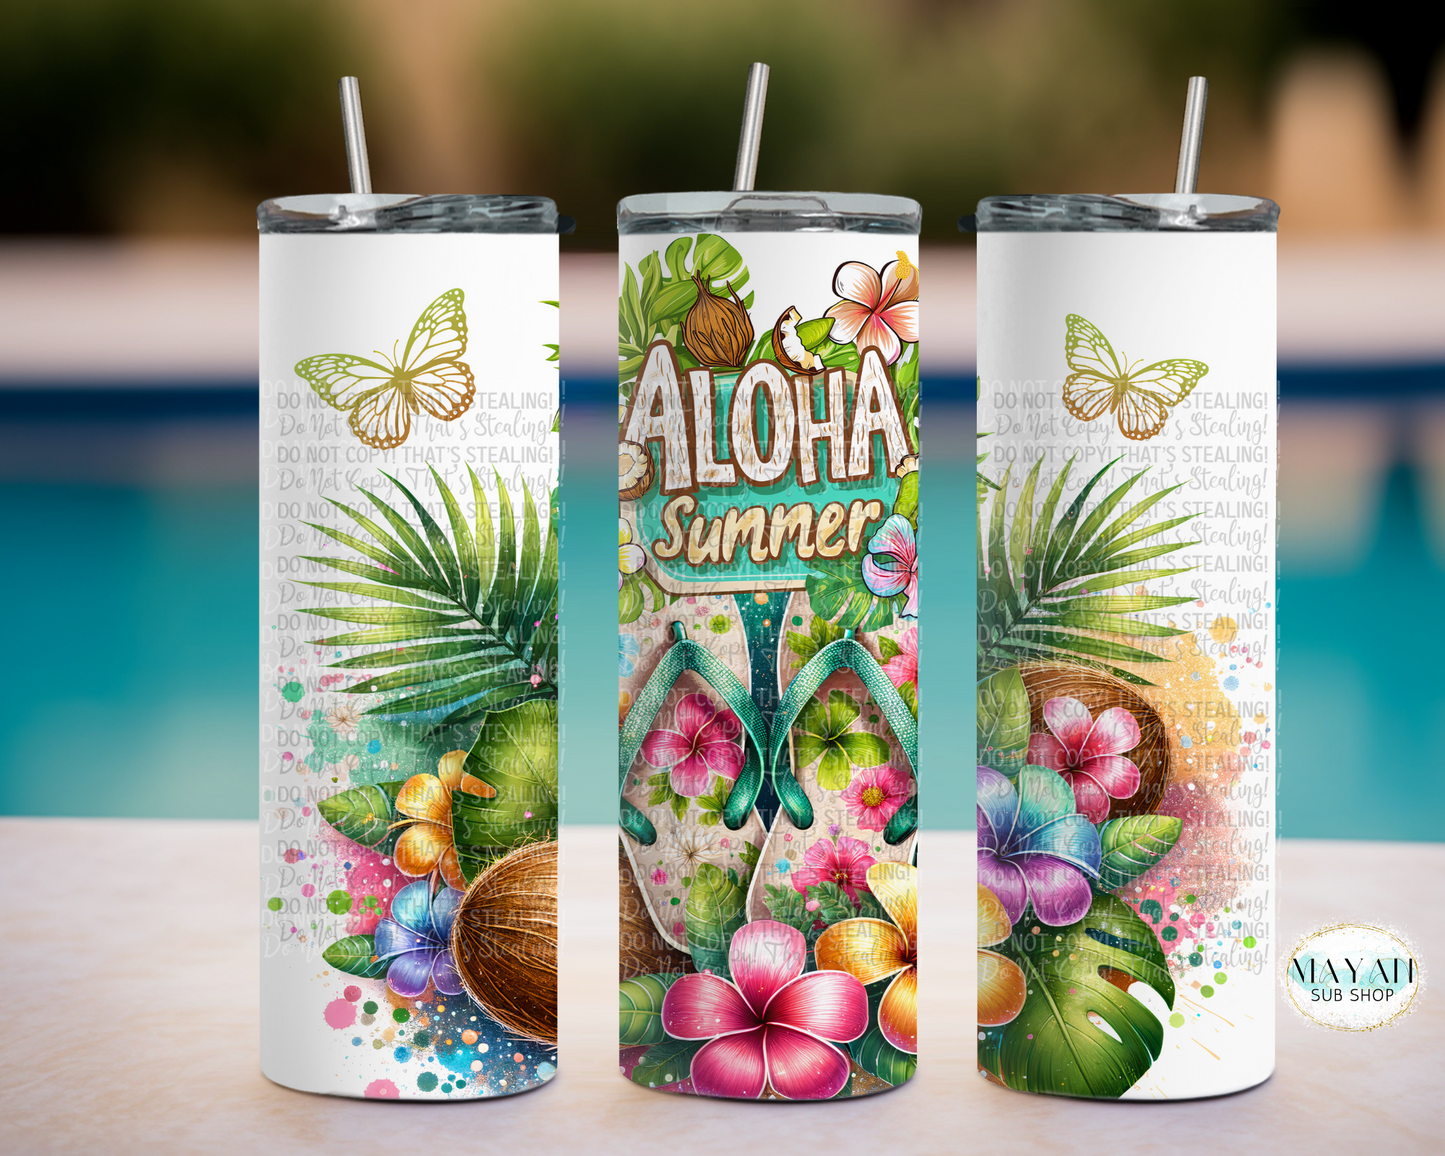 Aloha summer tumbler. -Mayan Sub Shop